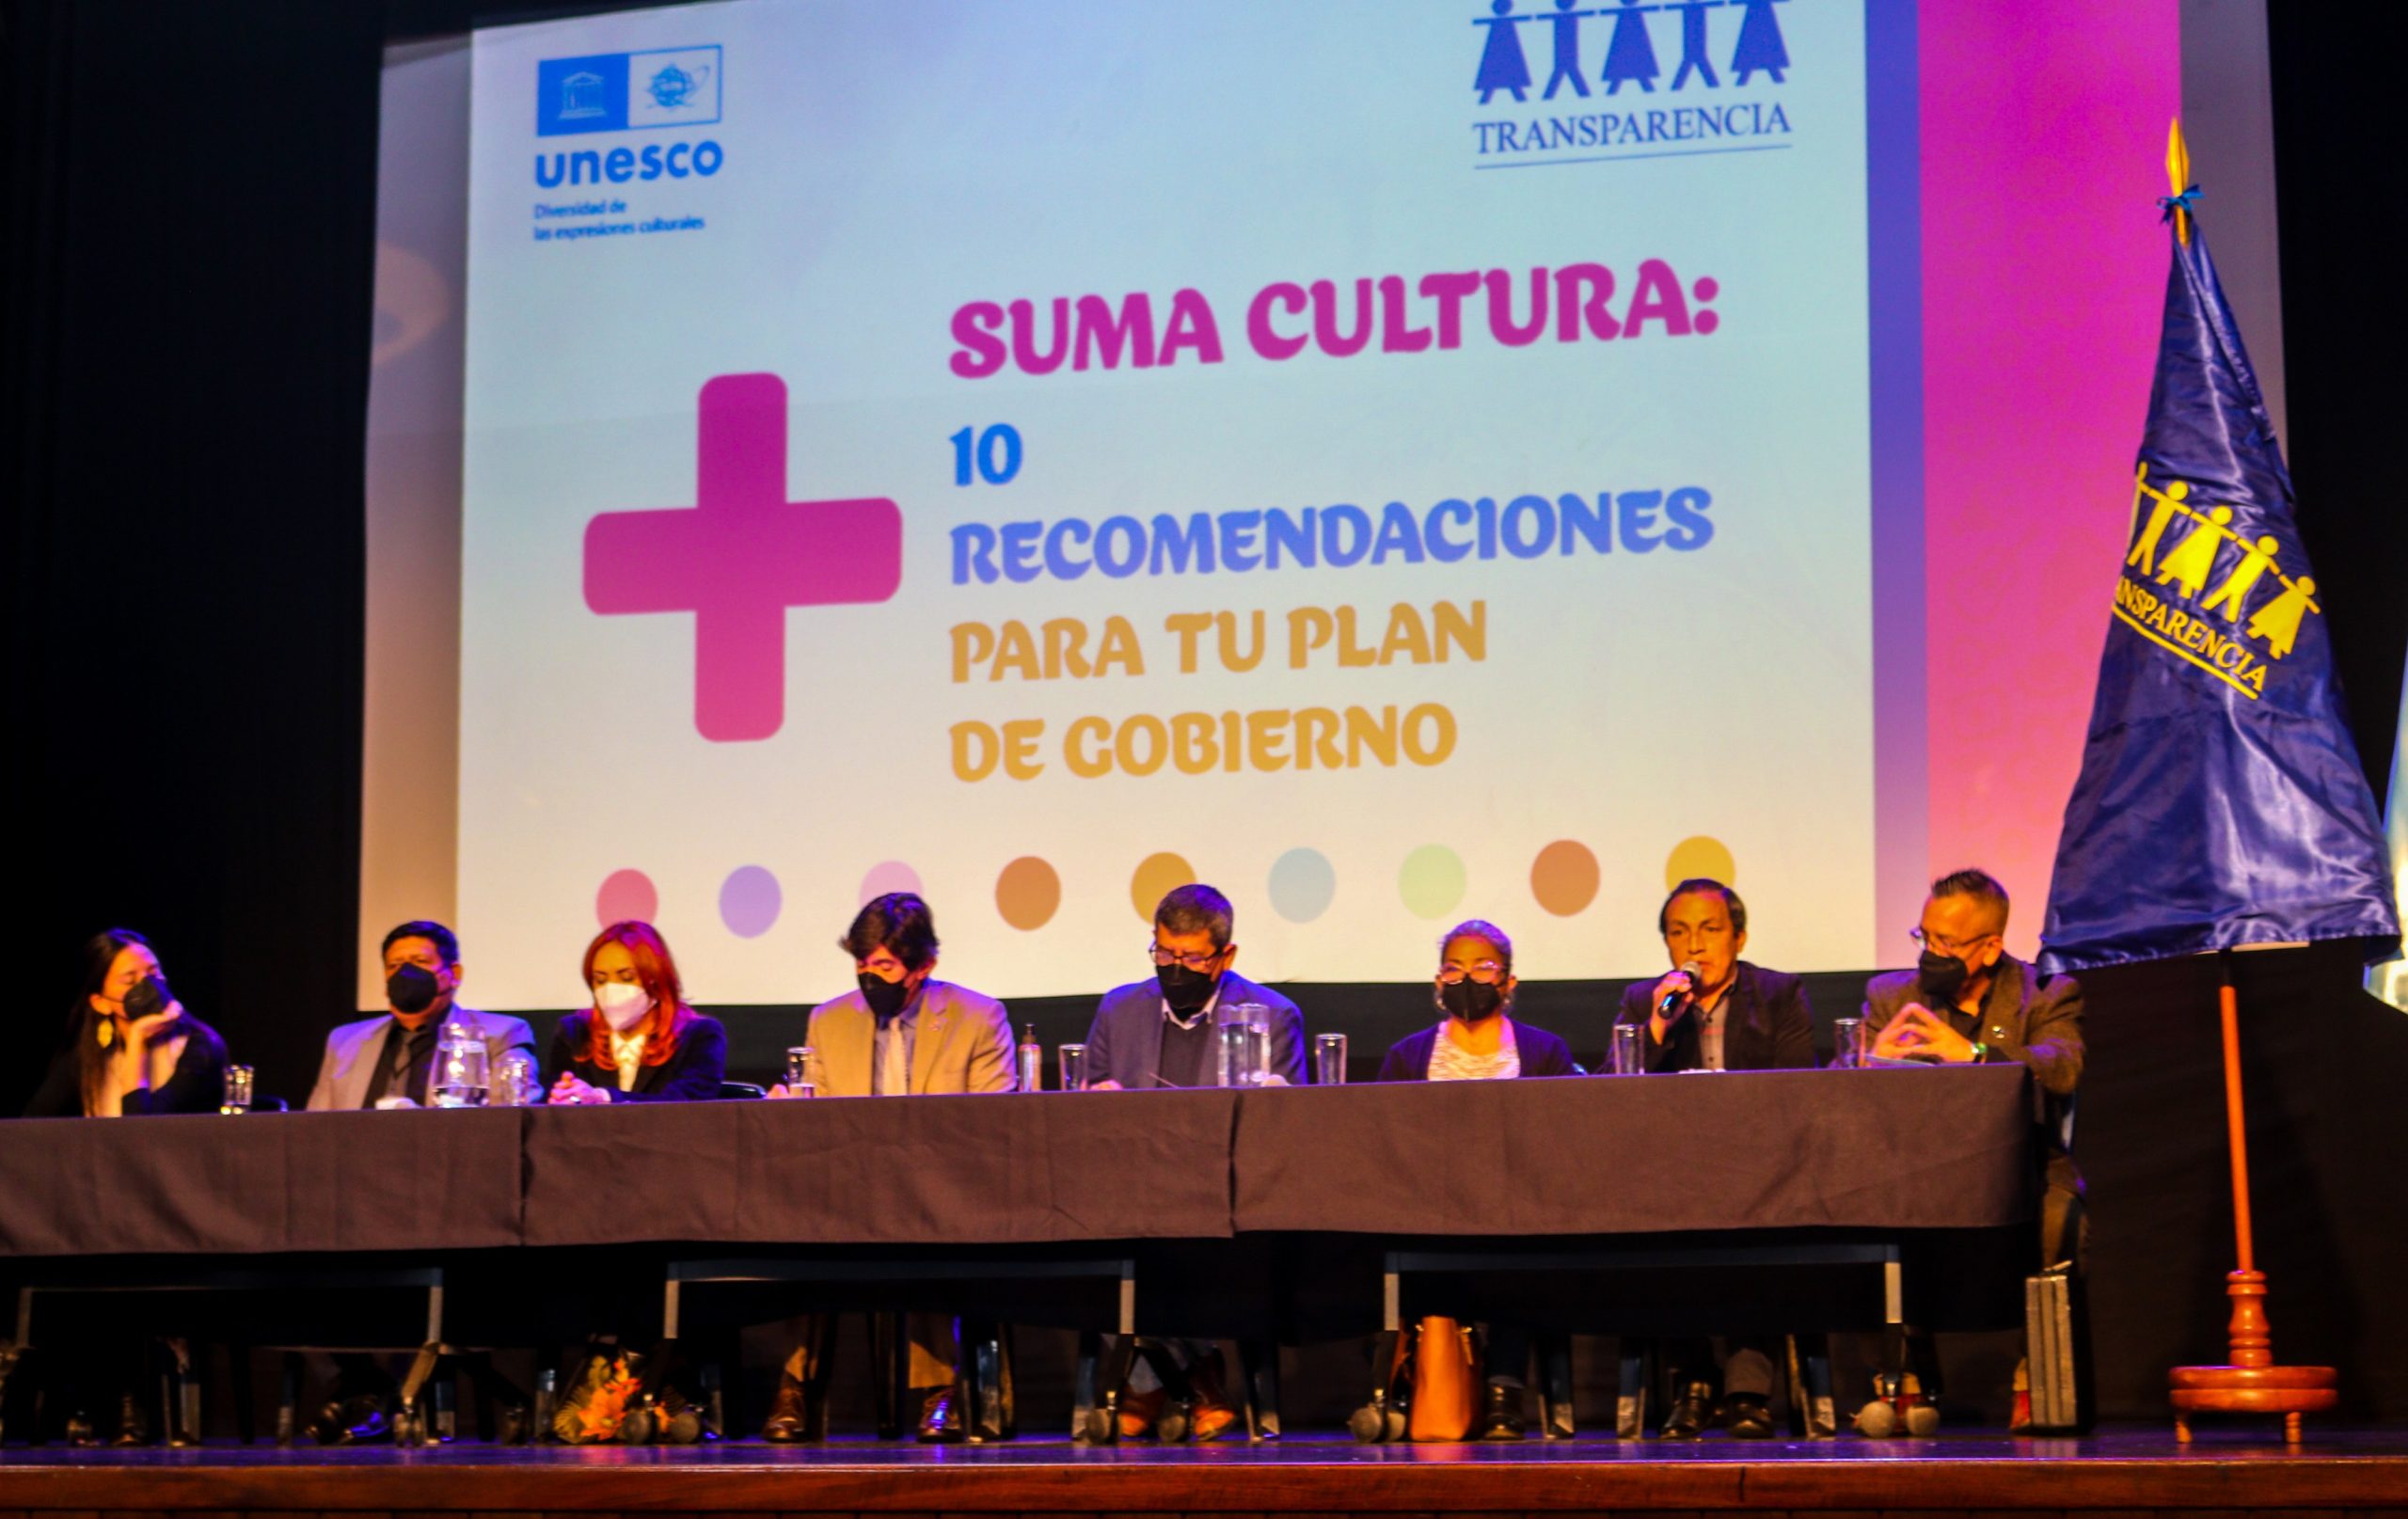 UNESCO y Transparencia llaman los candidatos a incluir la cultura en sus planes de gobierno